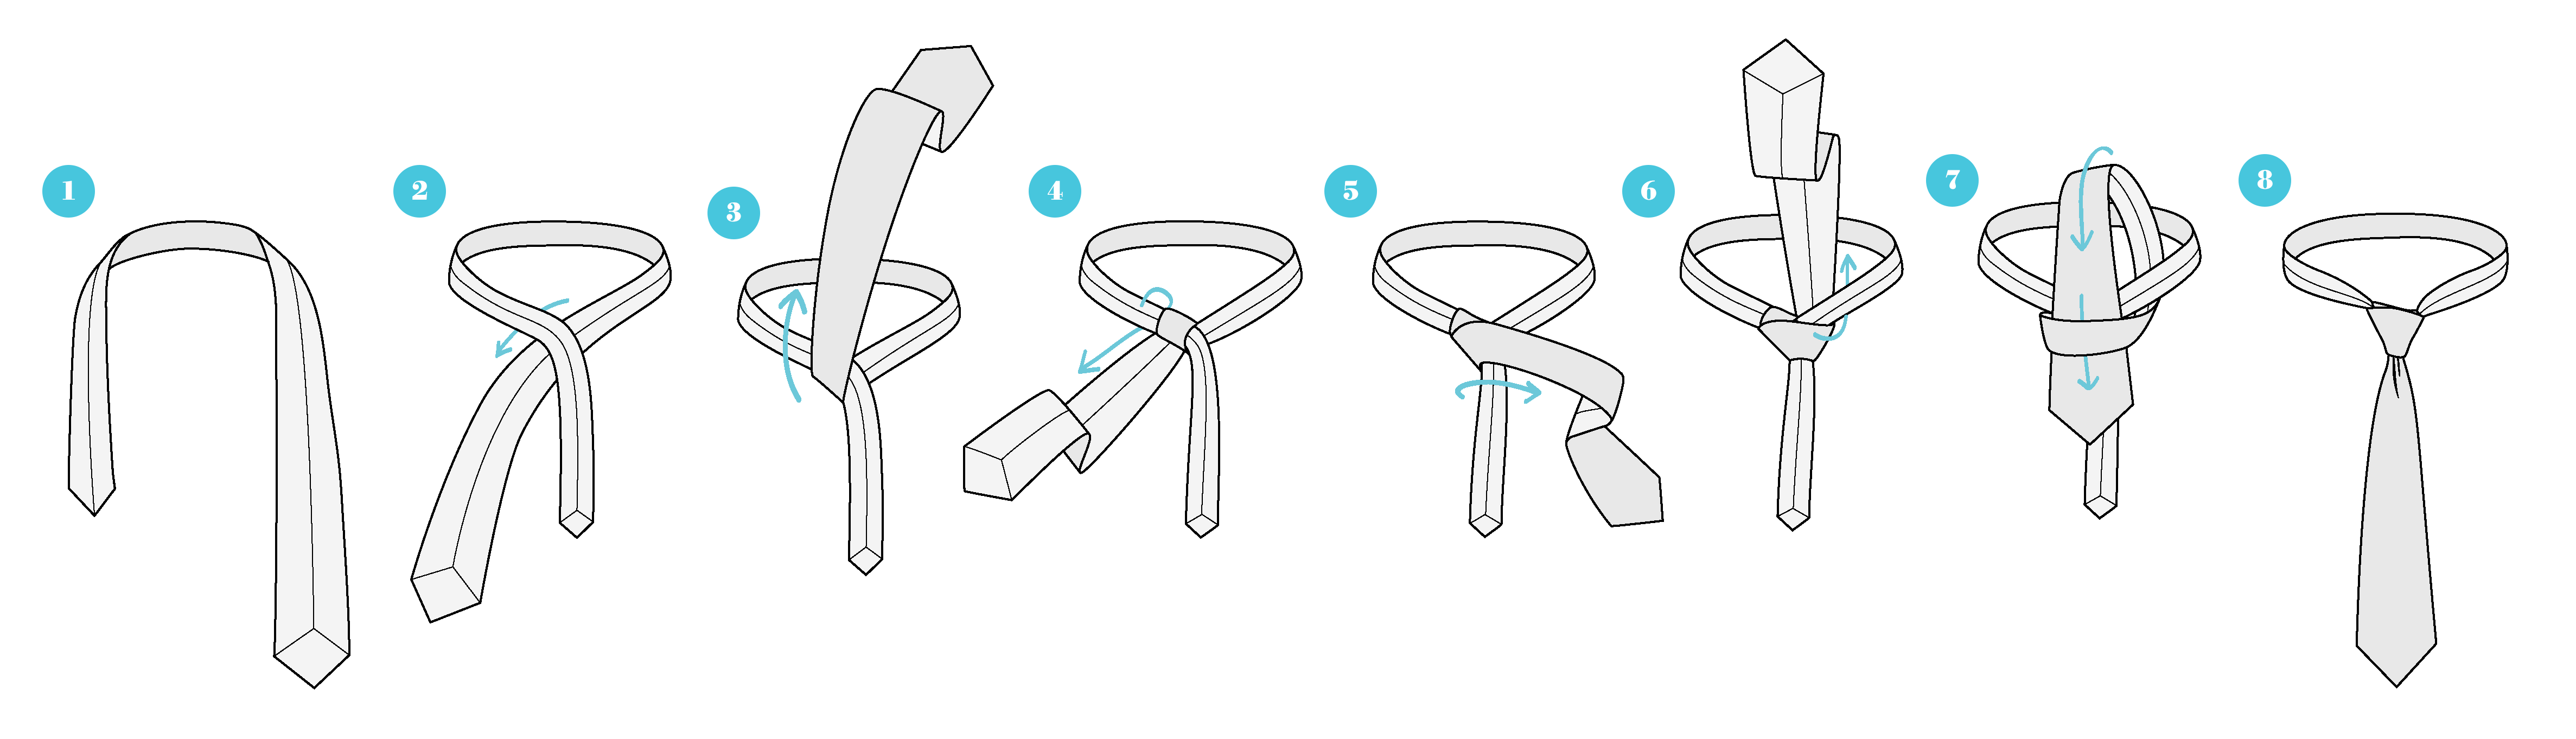 no-pratt-gravata-tutorial